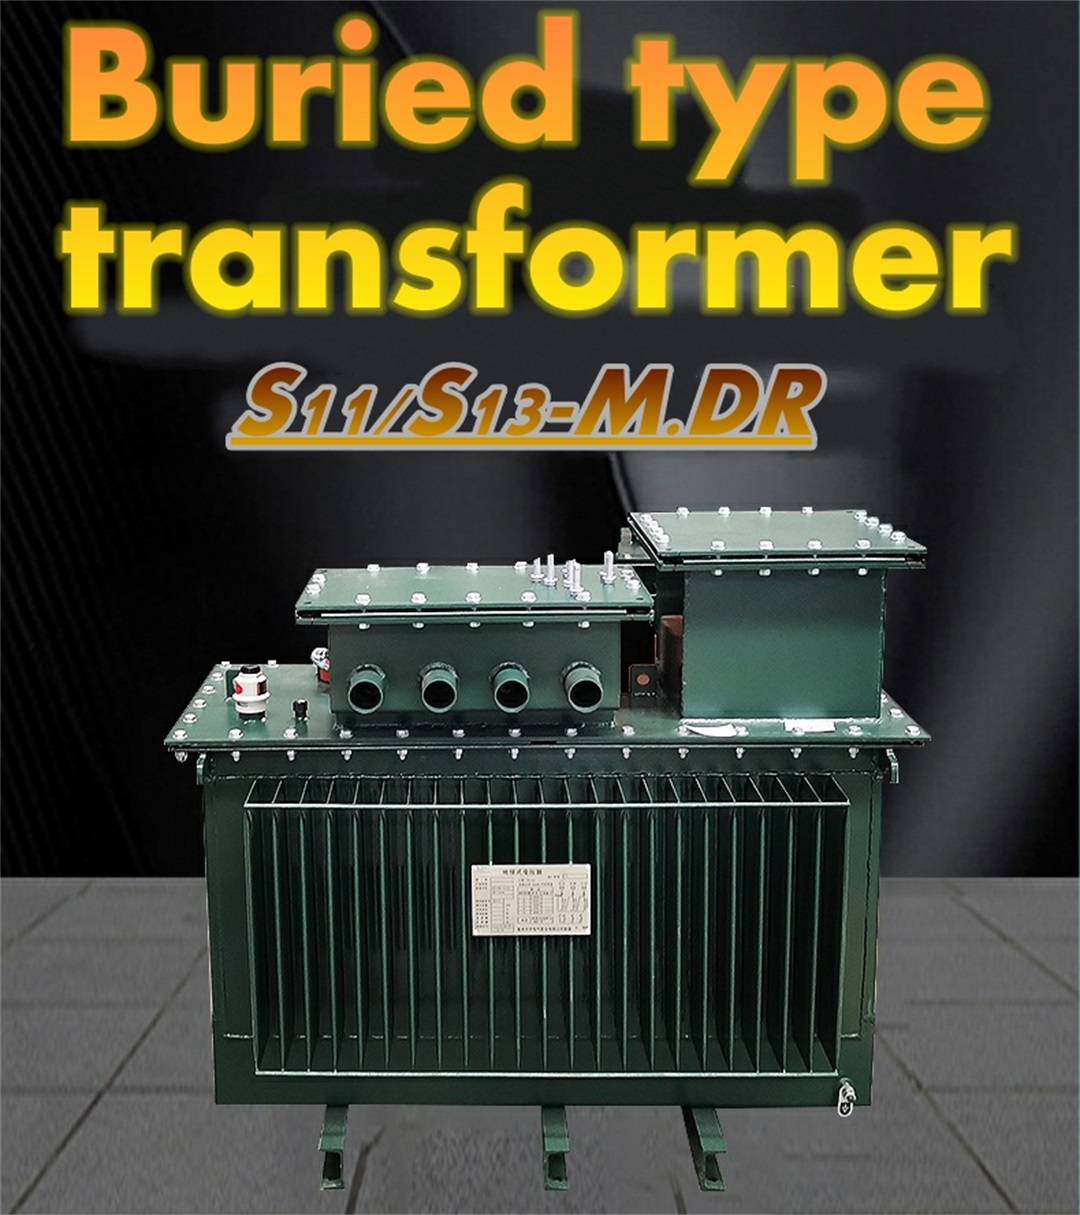 Buried transformer